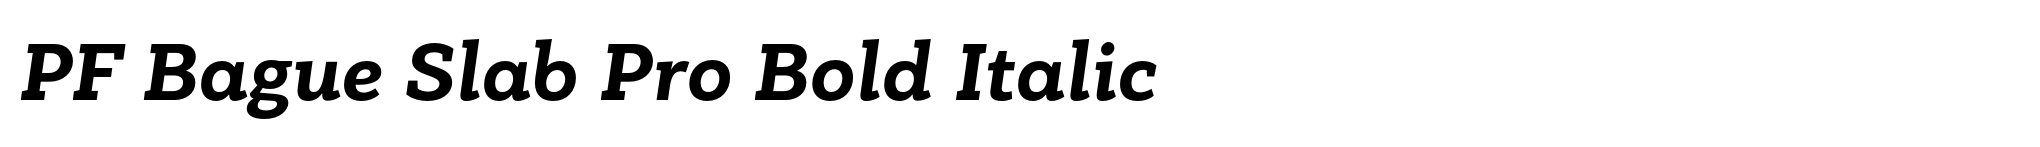 PF Bague Slab Pro Bold Italic image